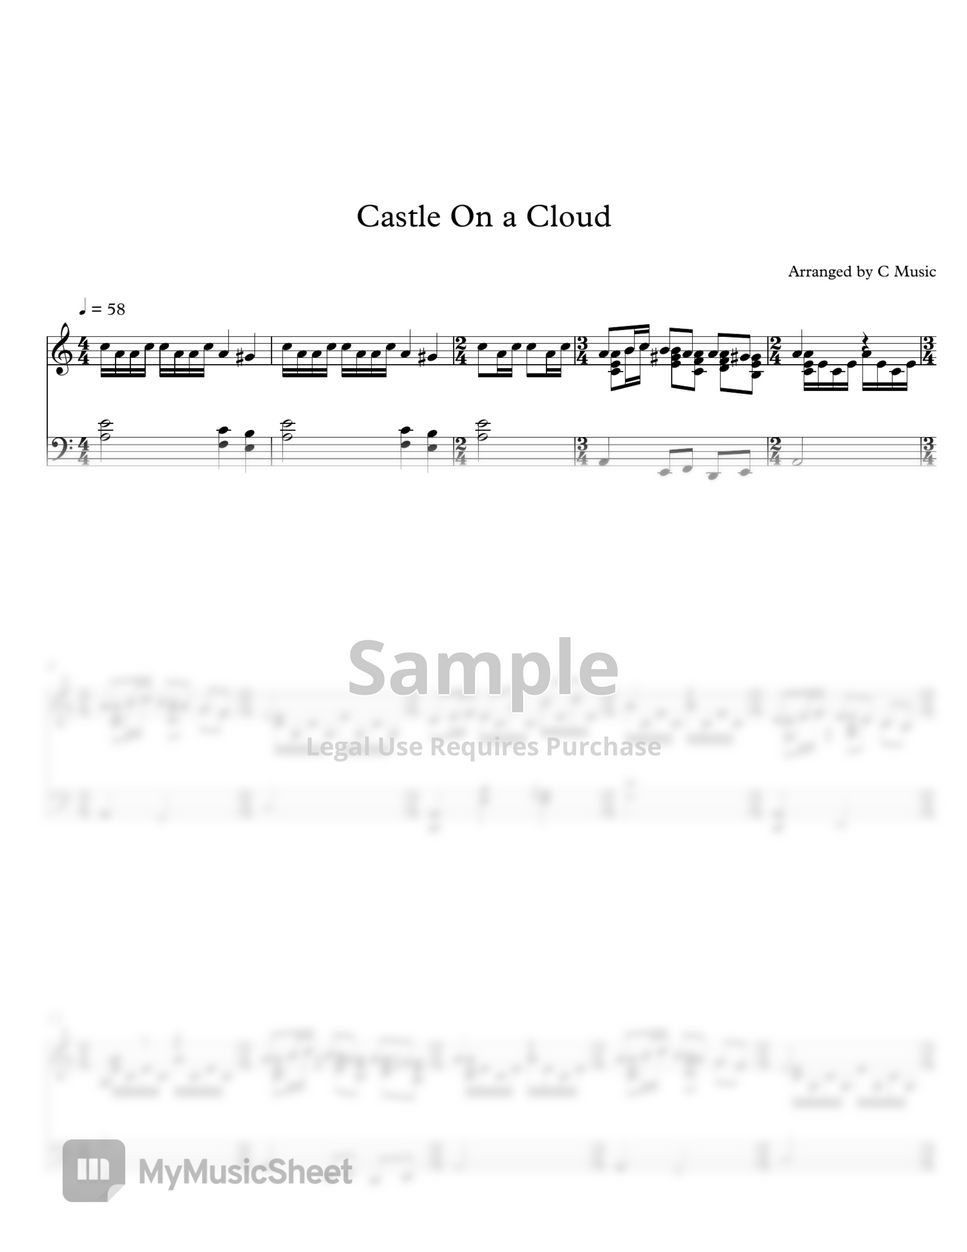 Les Misérables 孤星淚 - Castle On A Cloud by C Music